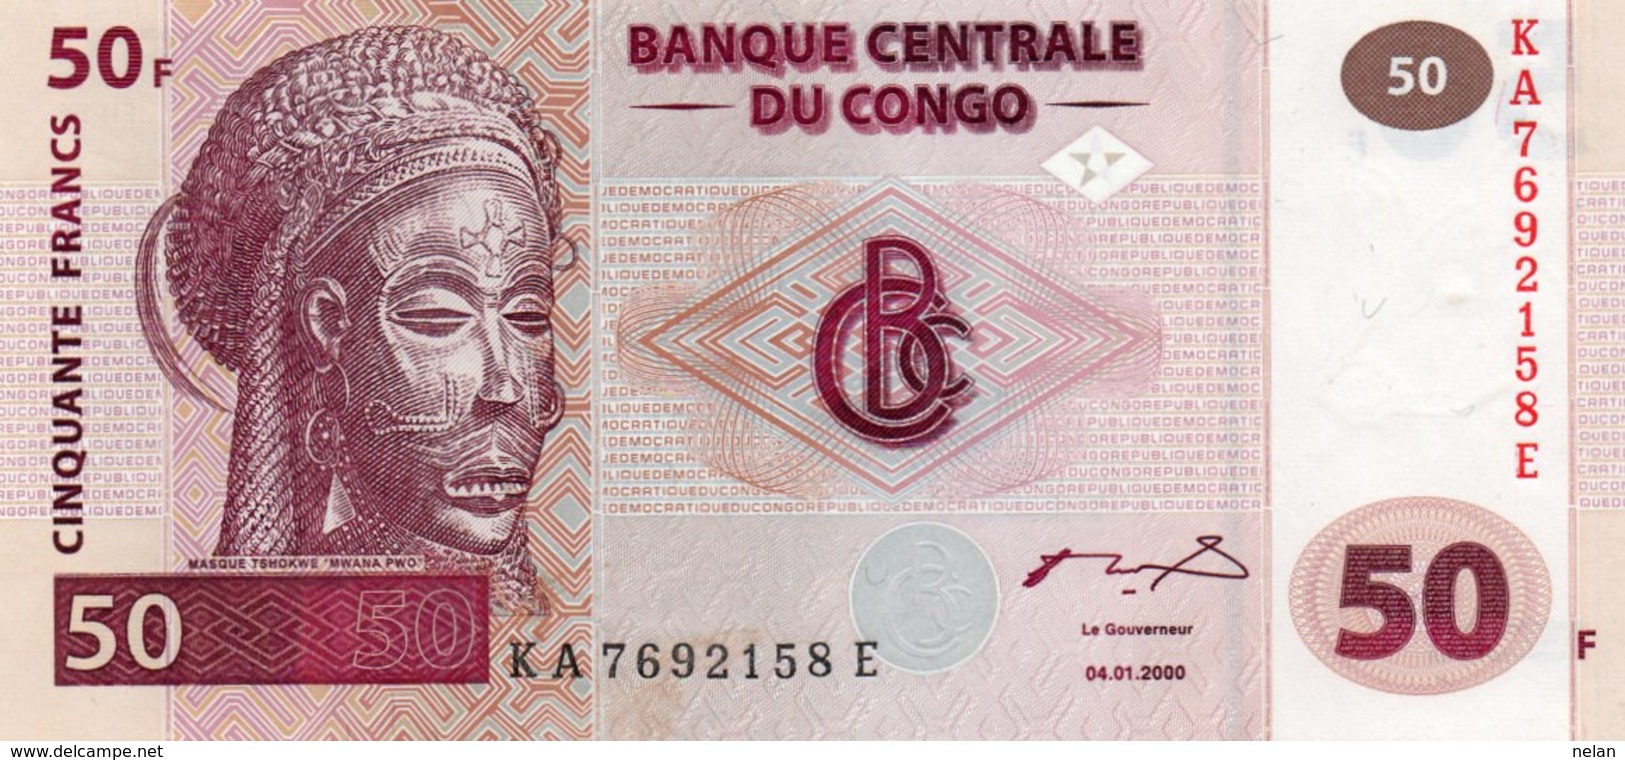 CONGO DEMOCRATIC REPUBLIC 50 FRANCS 2000 P-91A  UNC - Democratic Republic Of The Congo & Zaire